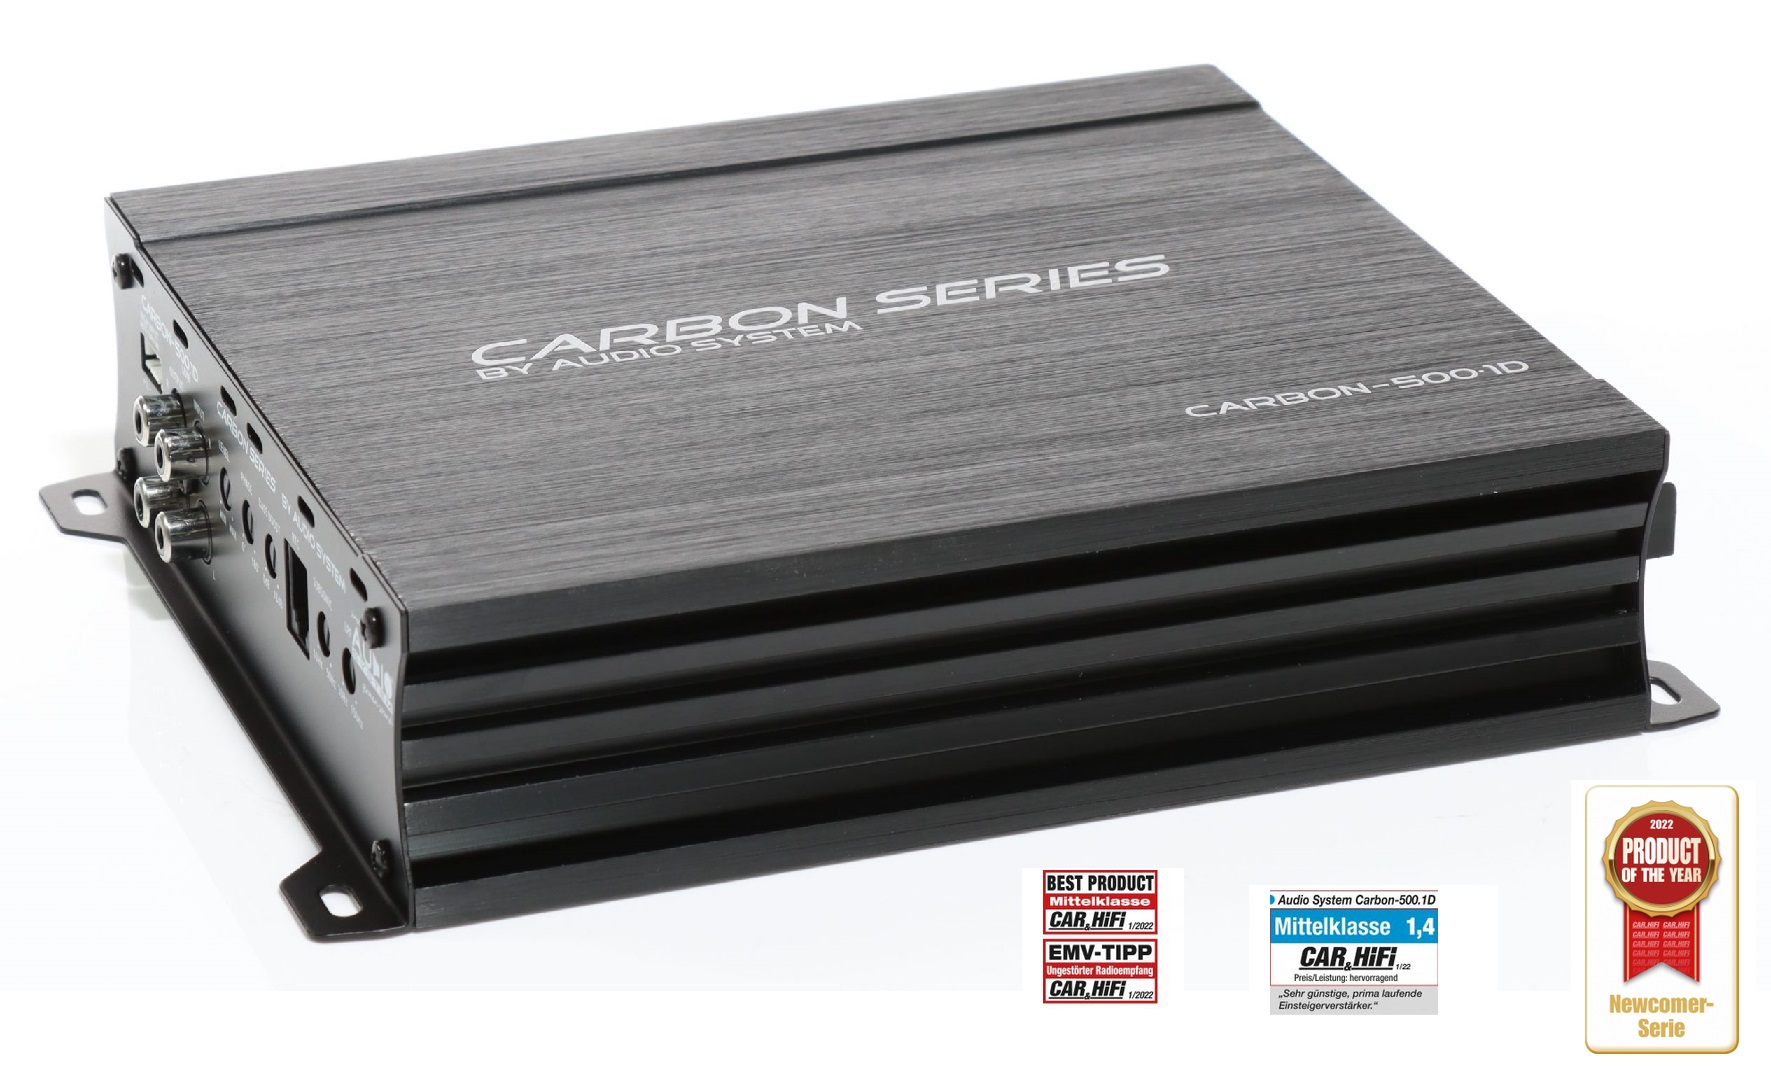 Audio System CARBON 500.1 D Mono 1 Kanal Digitaler Mono-Verstärker 500 Watt RMS